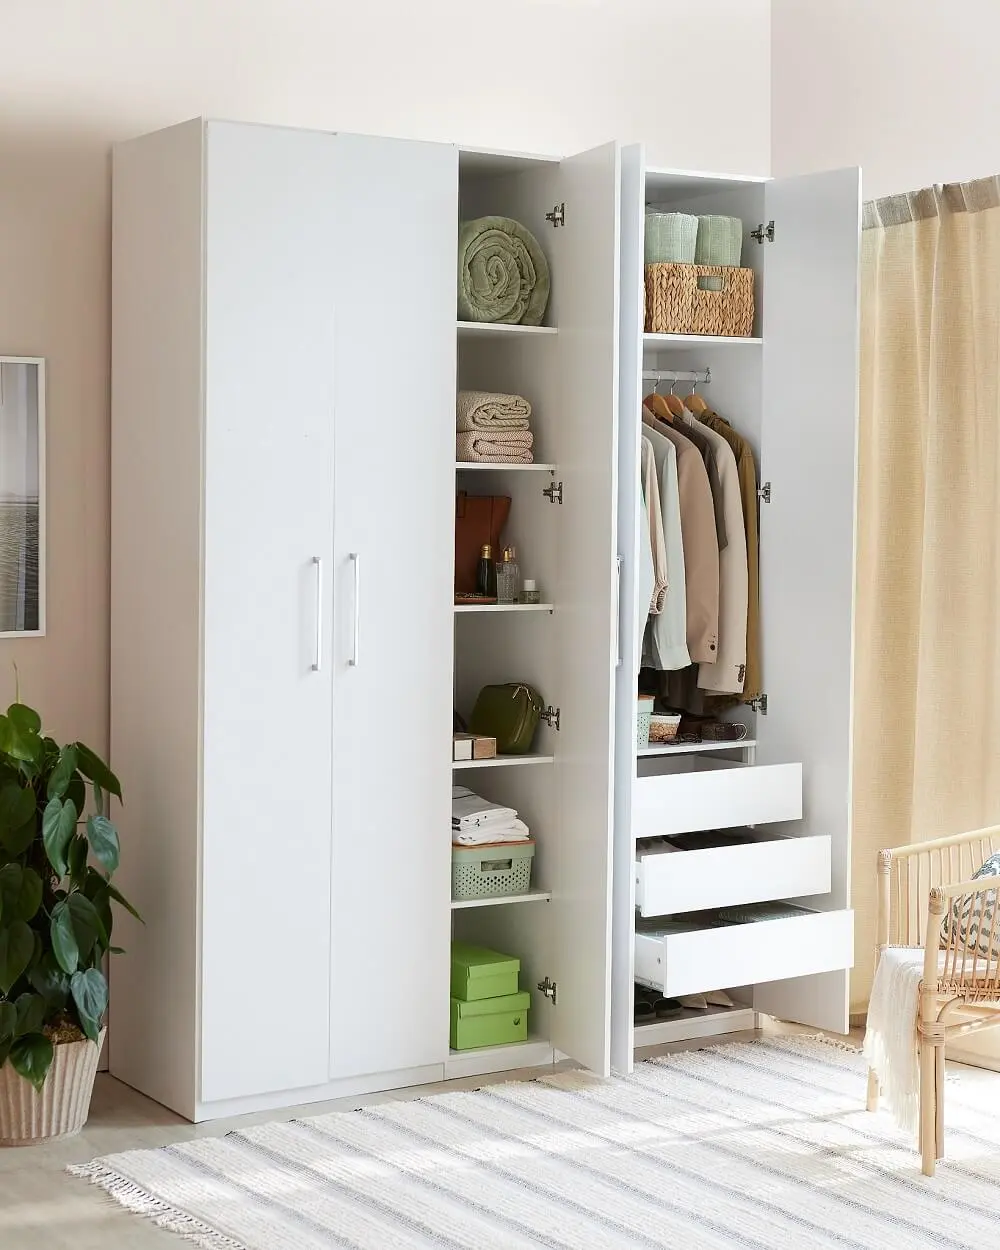 A cor branca nos armários dão um toque delicado e minimalista ao espaço